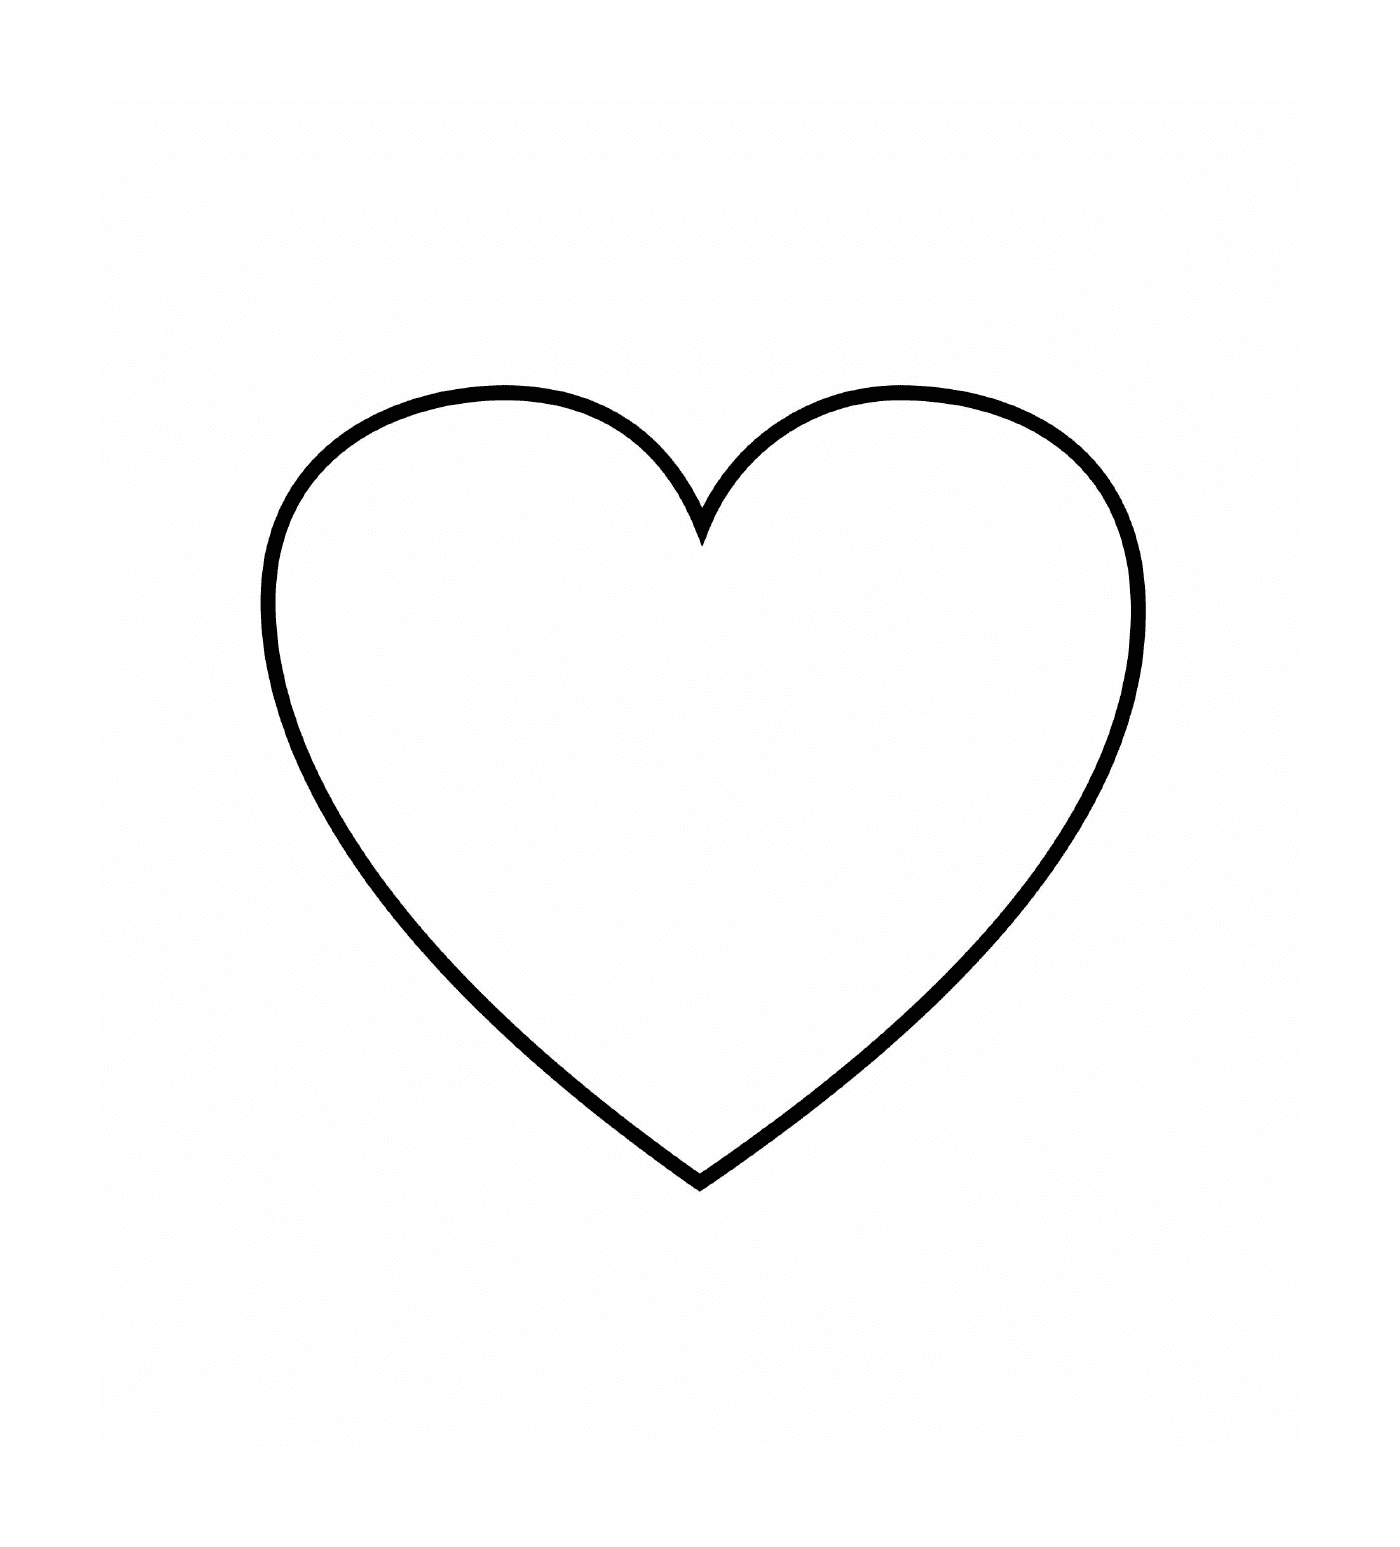  A heart 